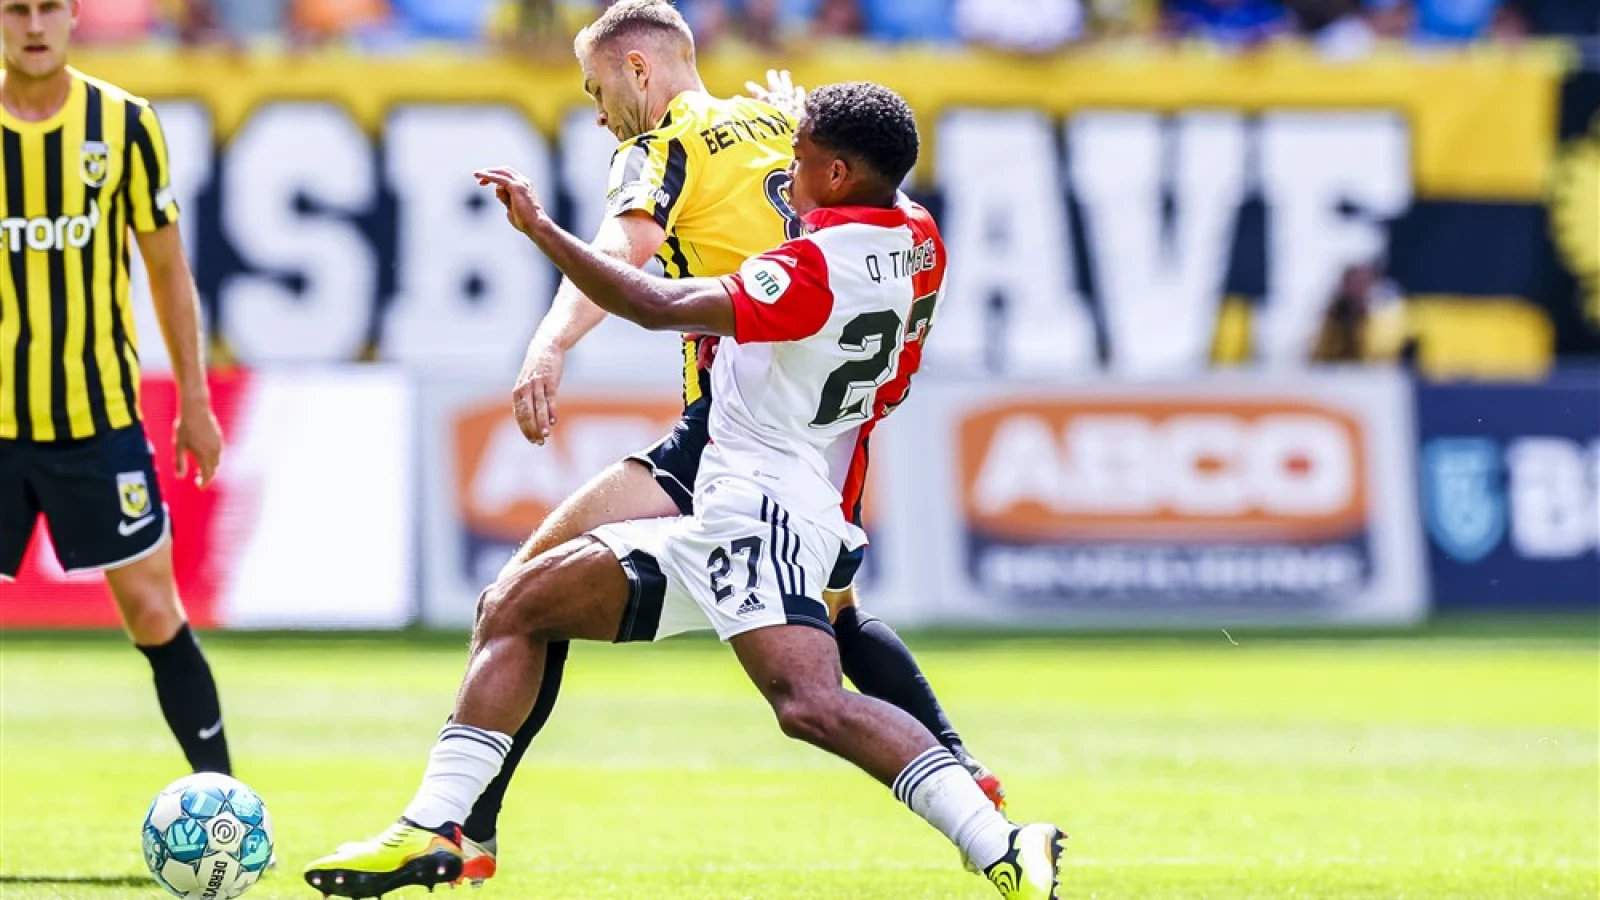 LIVE | Vitesse - Feyenoord 2-5 | Einde wedstrijd